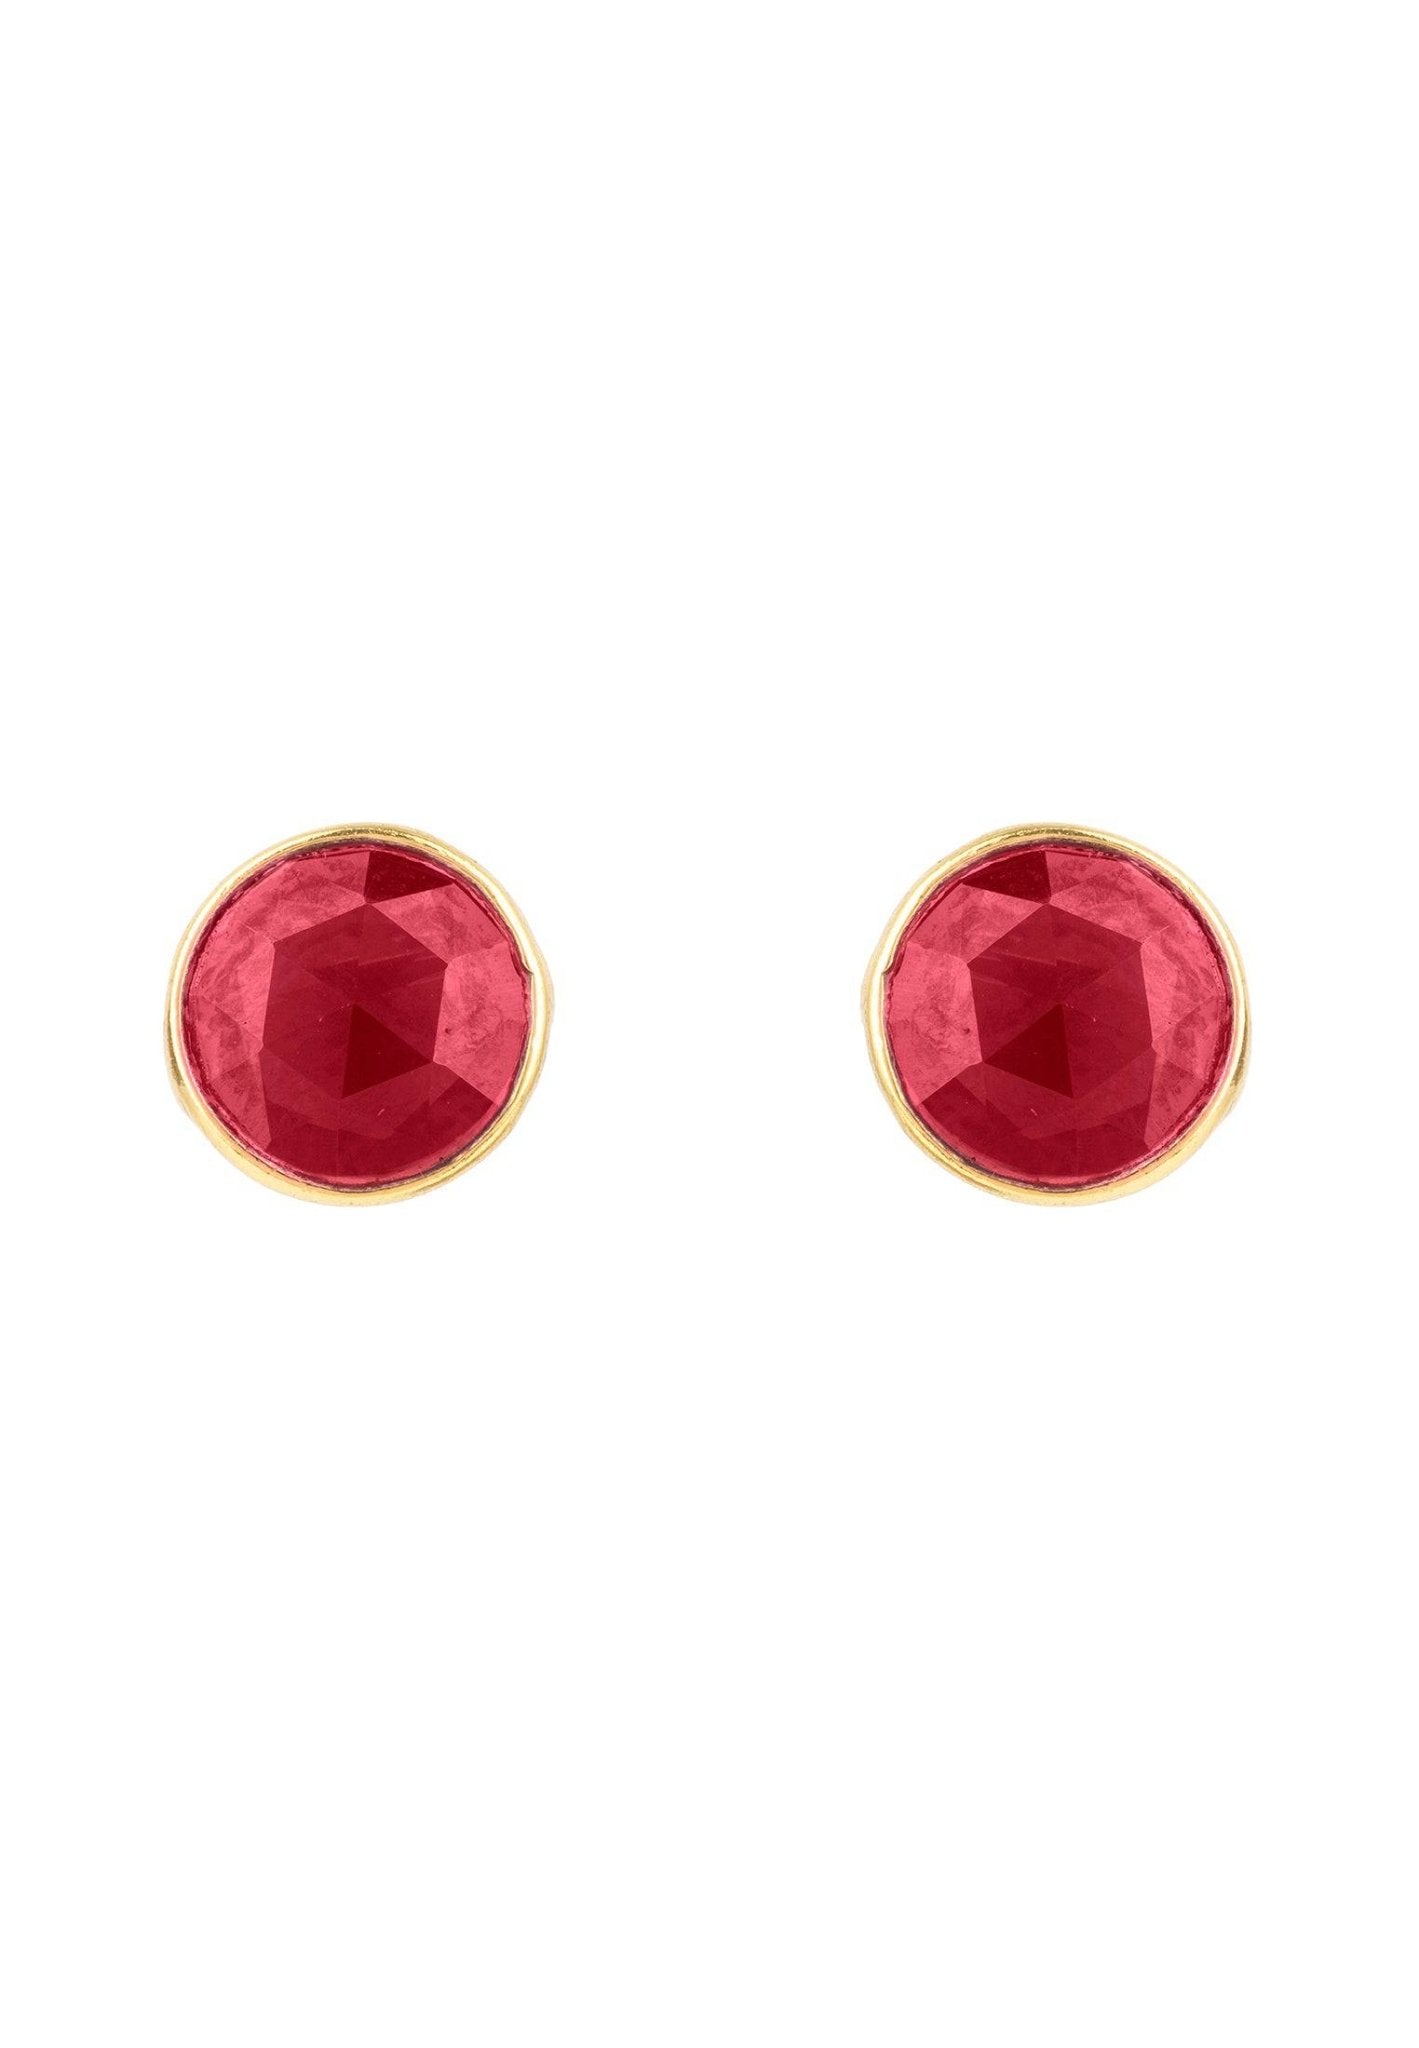 Medium Circle Gemstone Earrings Gold Garnet - LATELITA Earrings